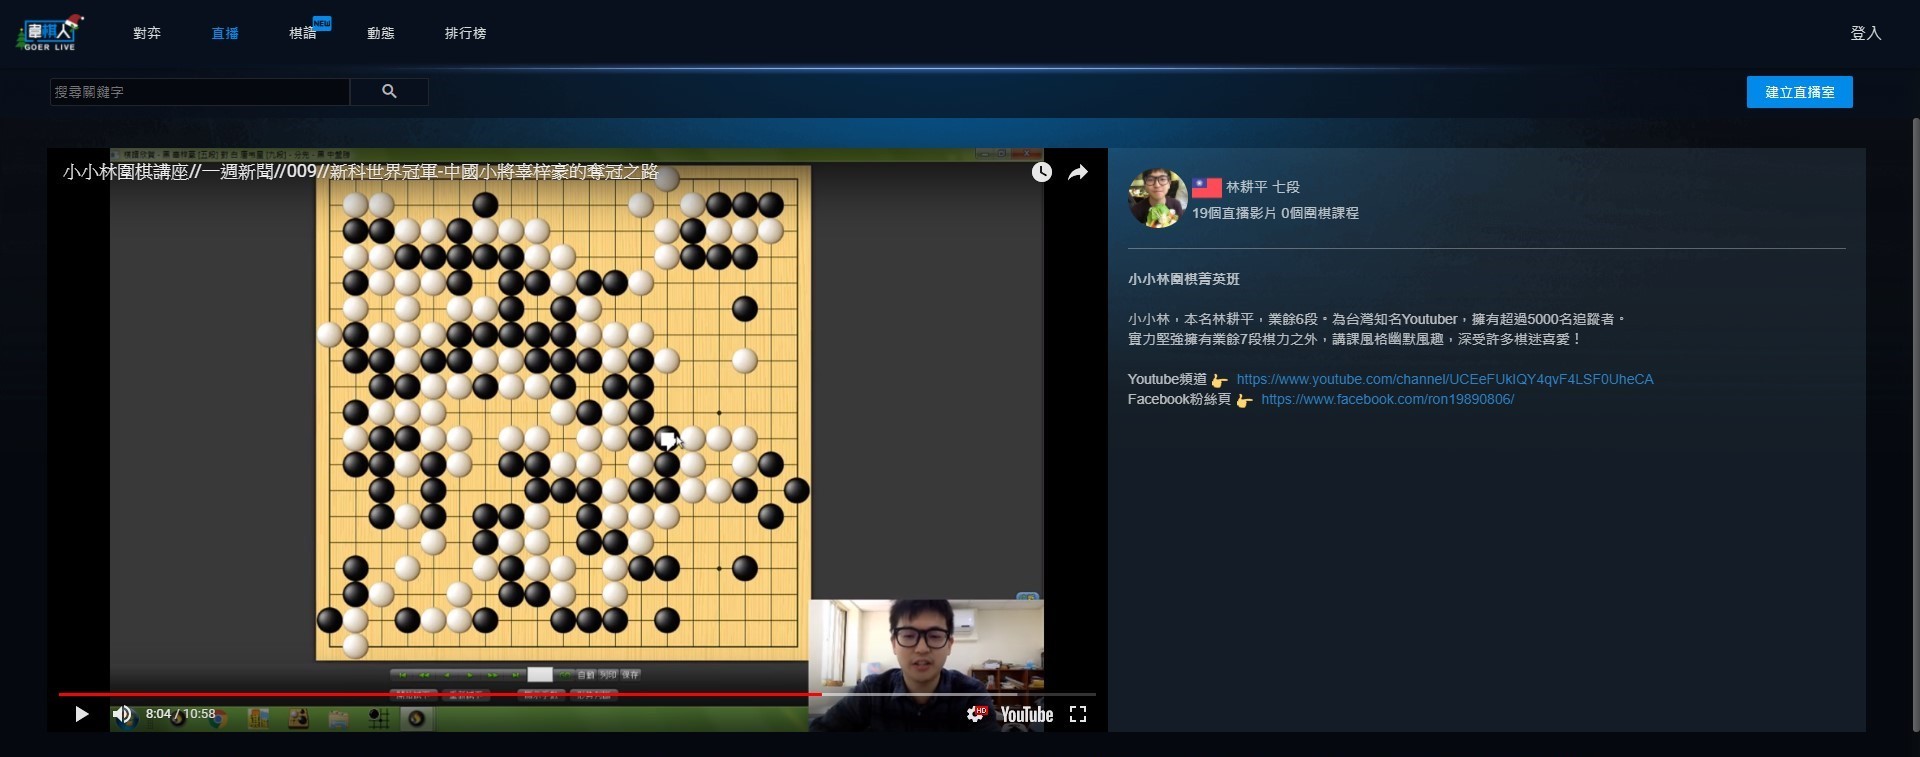 台灣自媒體協會企業報導》AlphaGo只是開始，「圍棋人」正醞釀一場O2O轉型